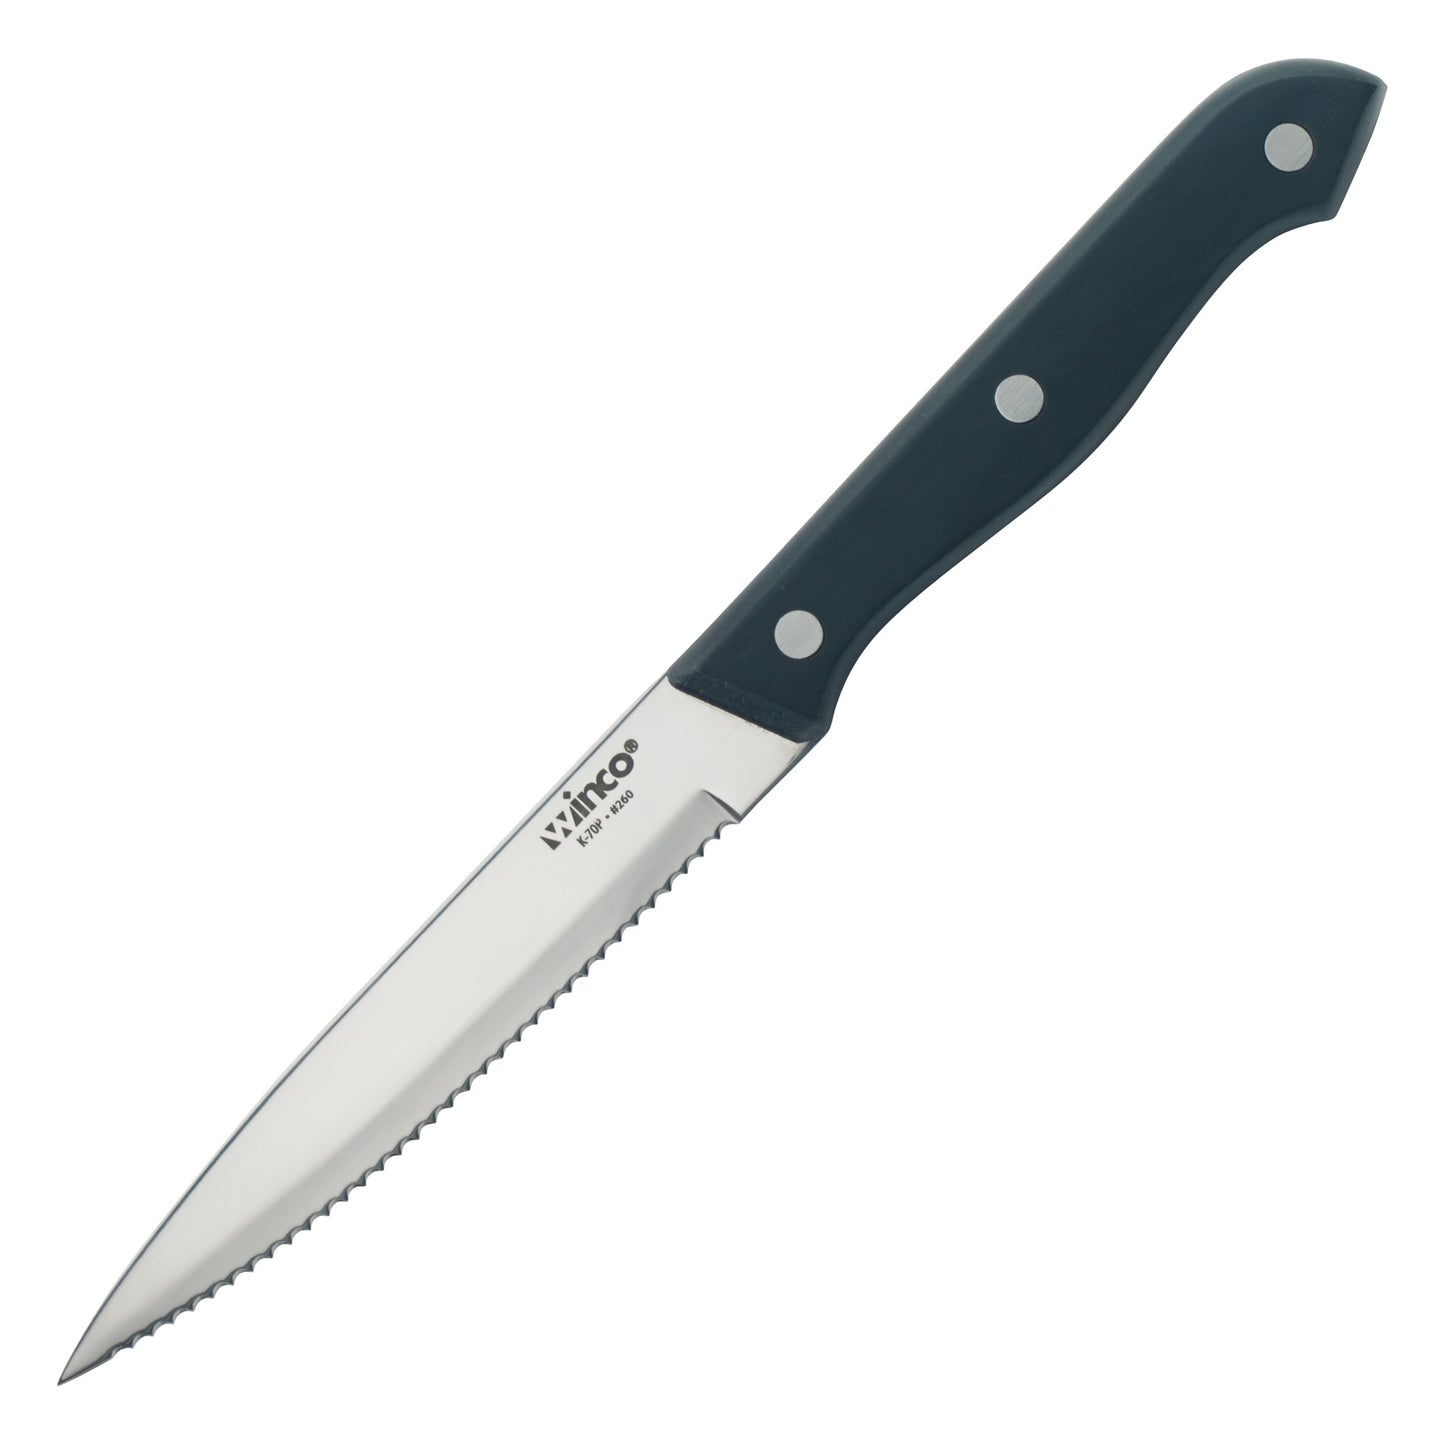 K-70P - Solid POM Handle Steak Knife, 5" Blade, Pointed Tip